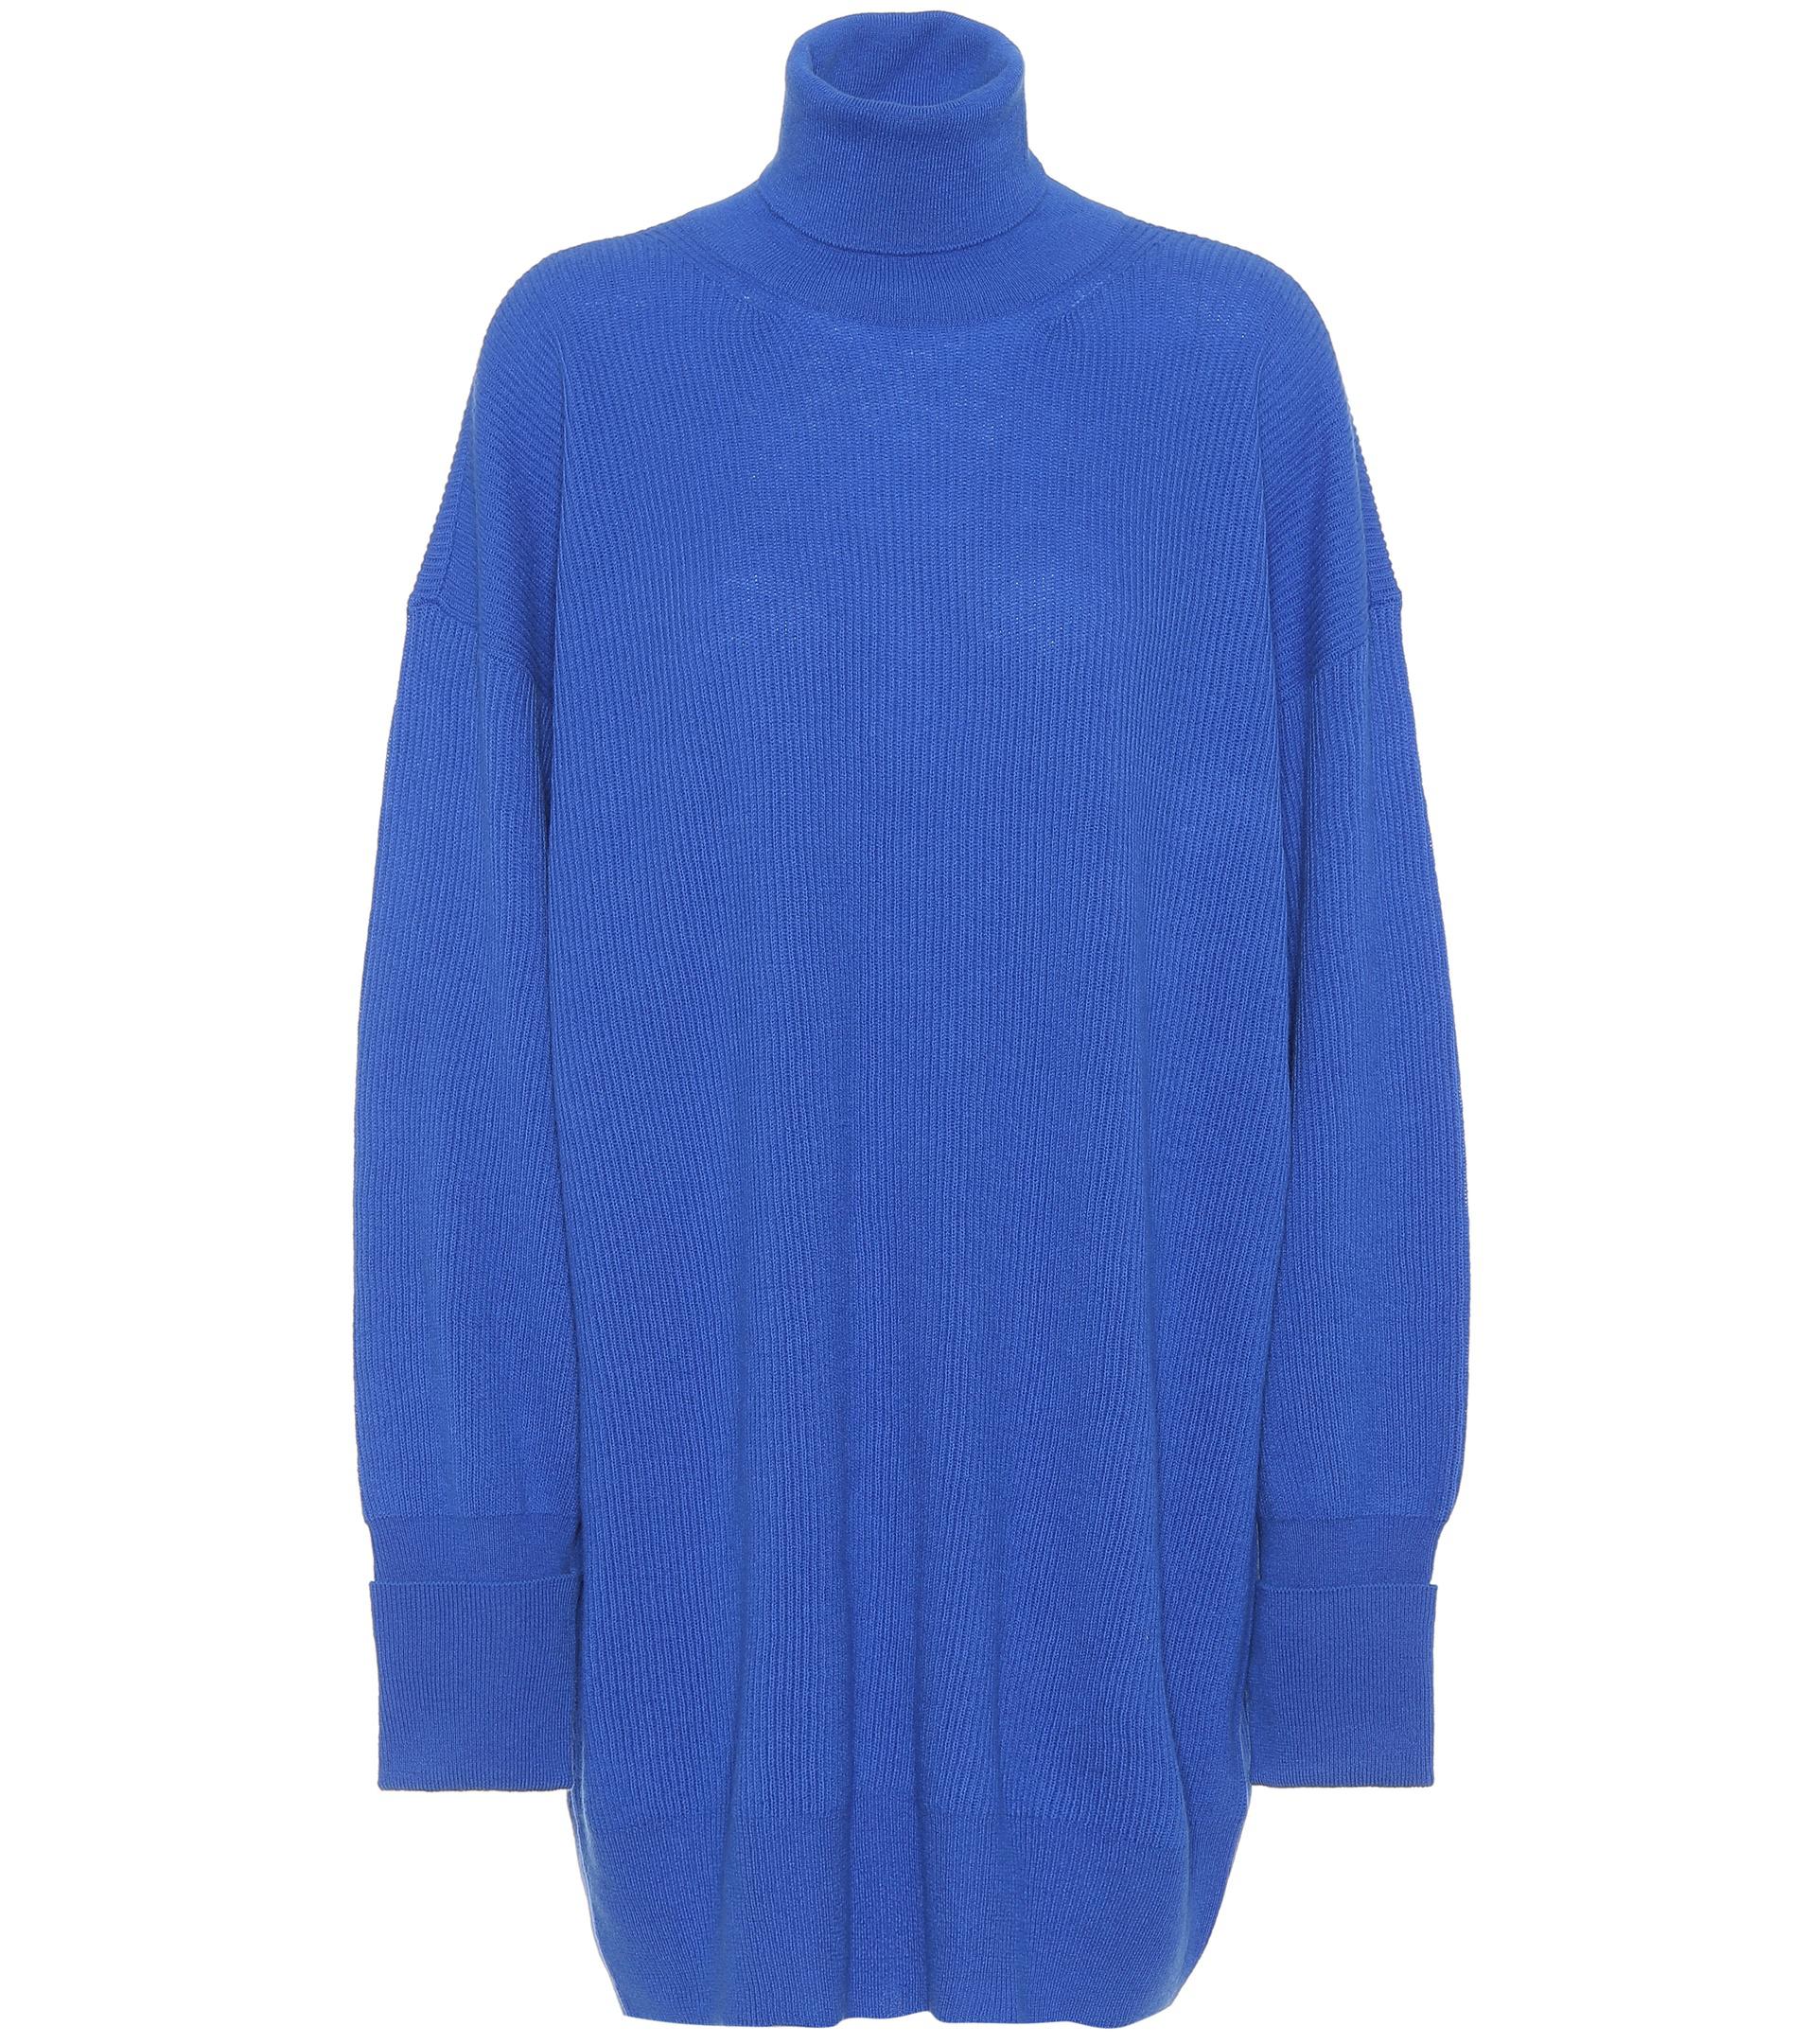 Maison Margiela Oversized Wool Turtleneck Sweater in Blue - Lyst